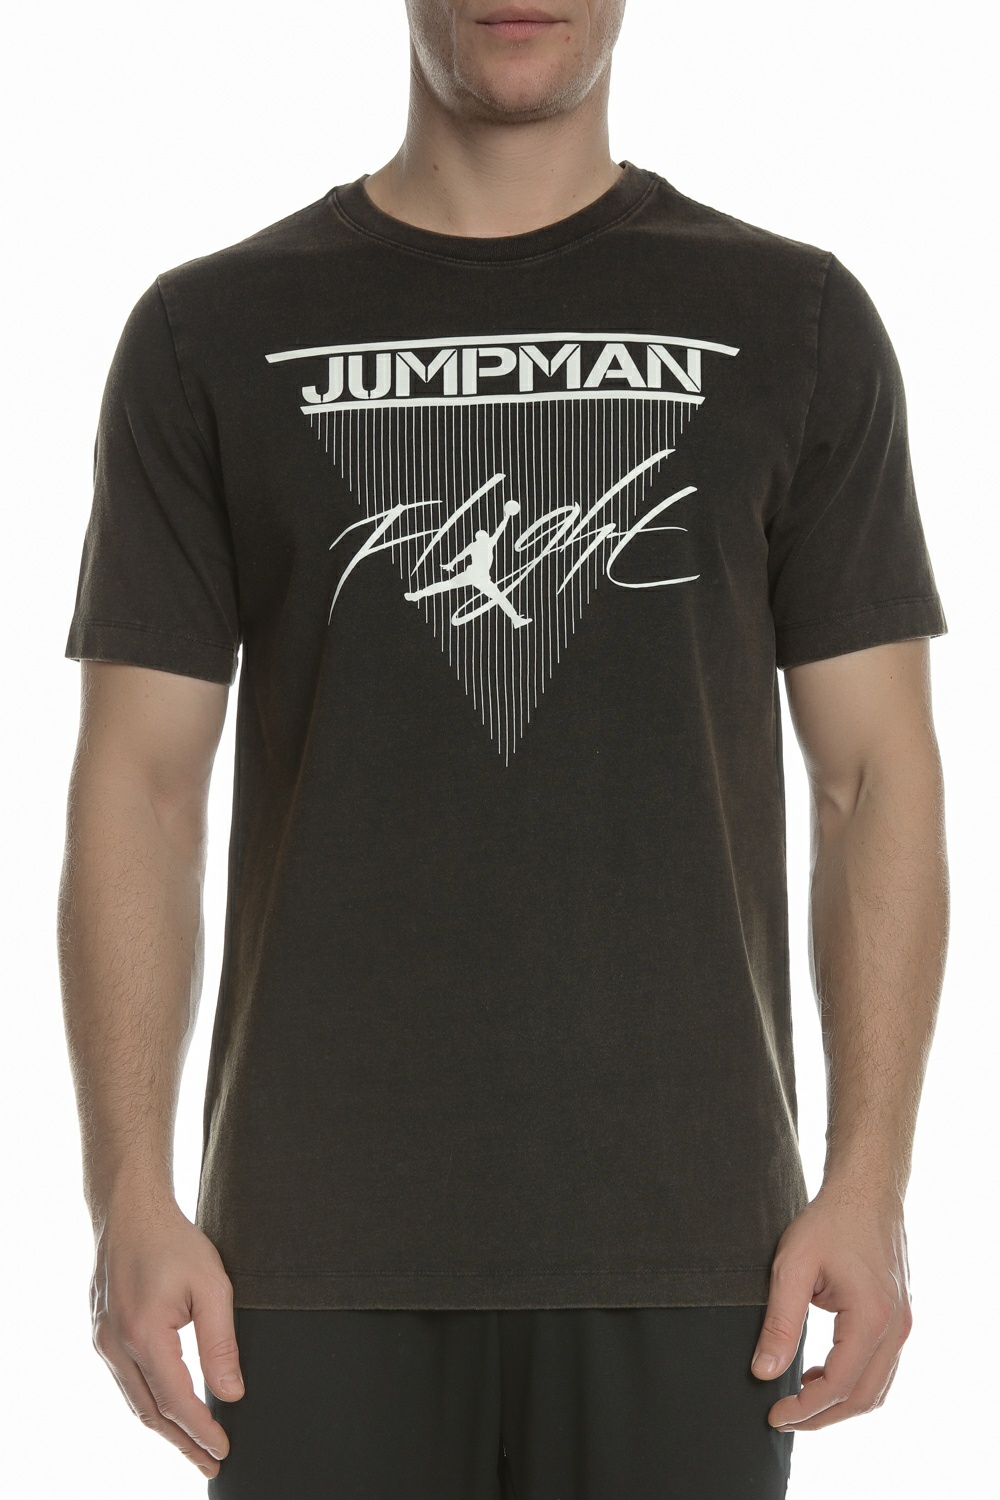 Ανδρικά/Ρούχα/Αθλητικά/T-shirt NIKE - Ανδρικό t-shirt NIKE J JUMPMAN FLIGHT CREW μαύρο